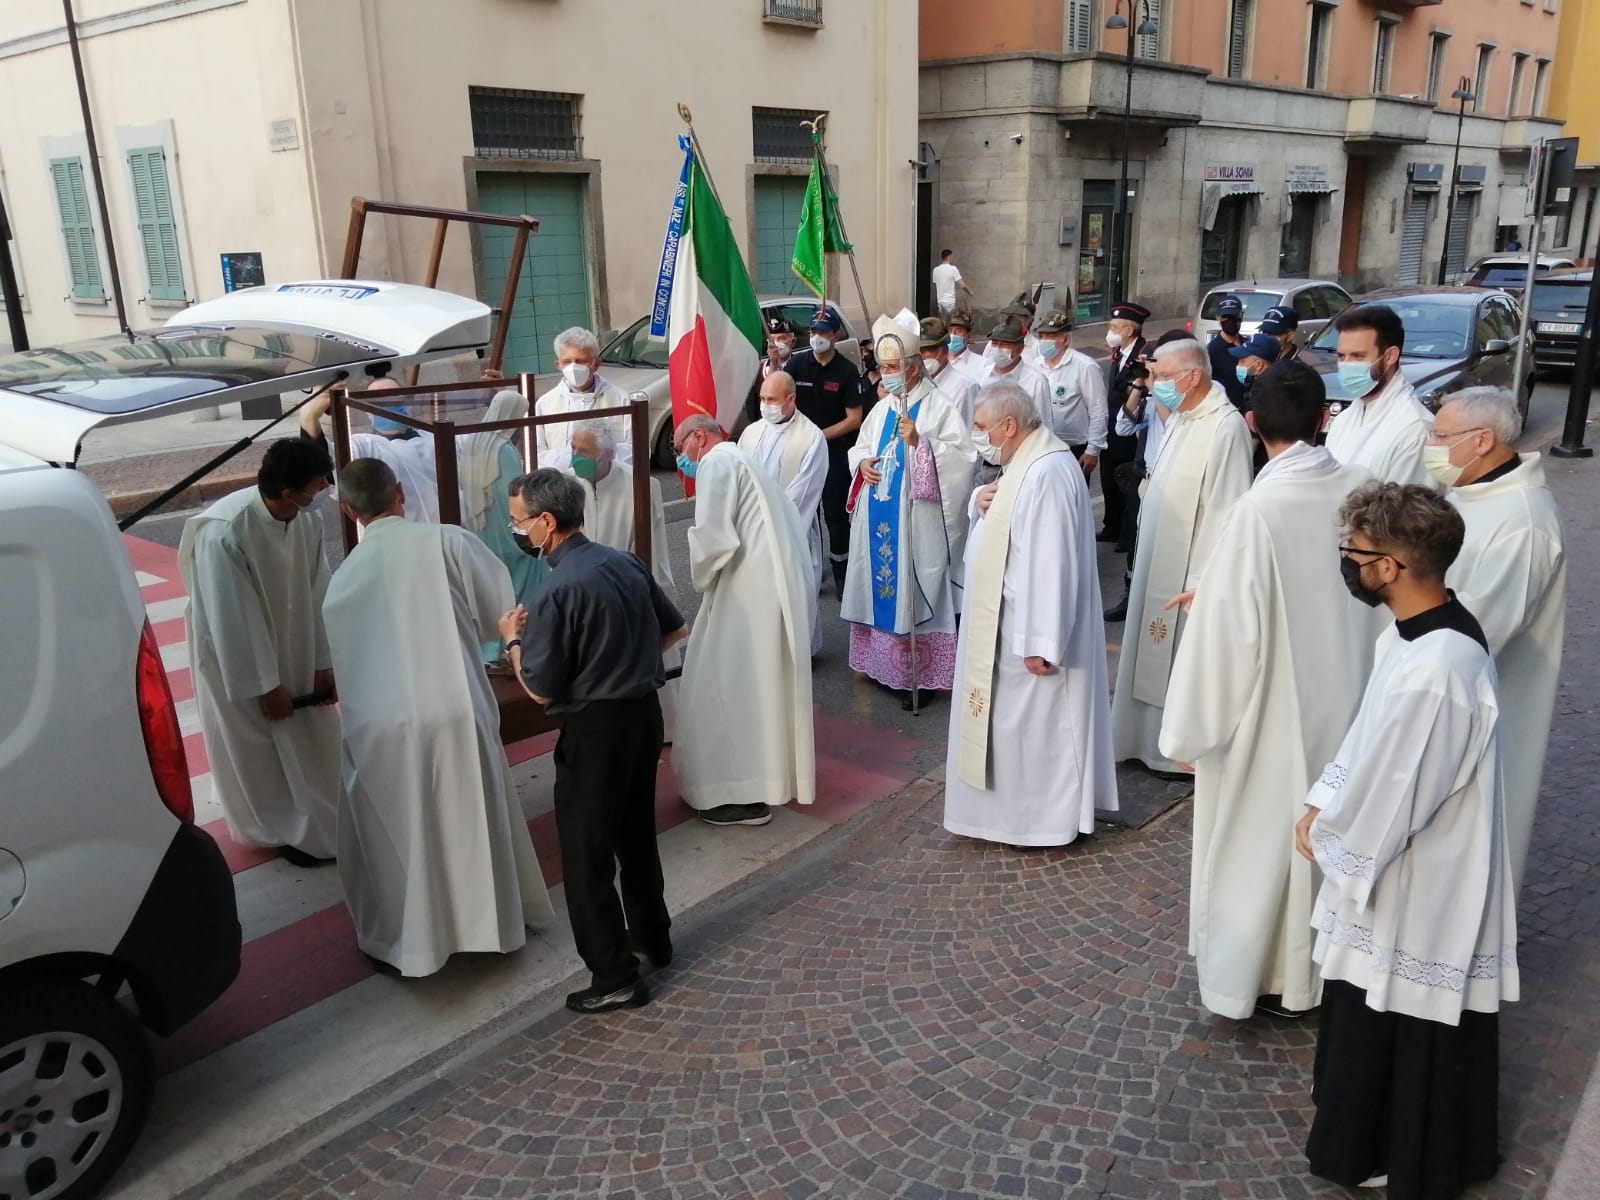 Il vescovo di Cremona monsignor Antonio Napolioni a Cassano d'Adda in Santa Maria e San Zeno per la Madonna della Medaglia miracolosa